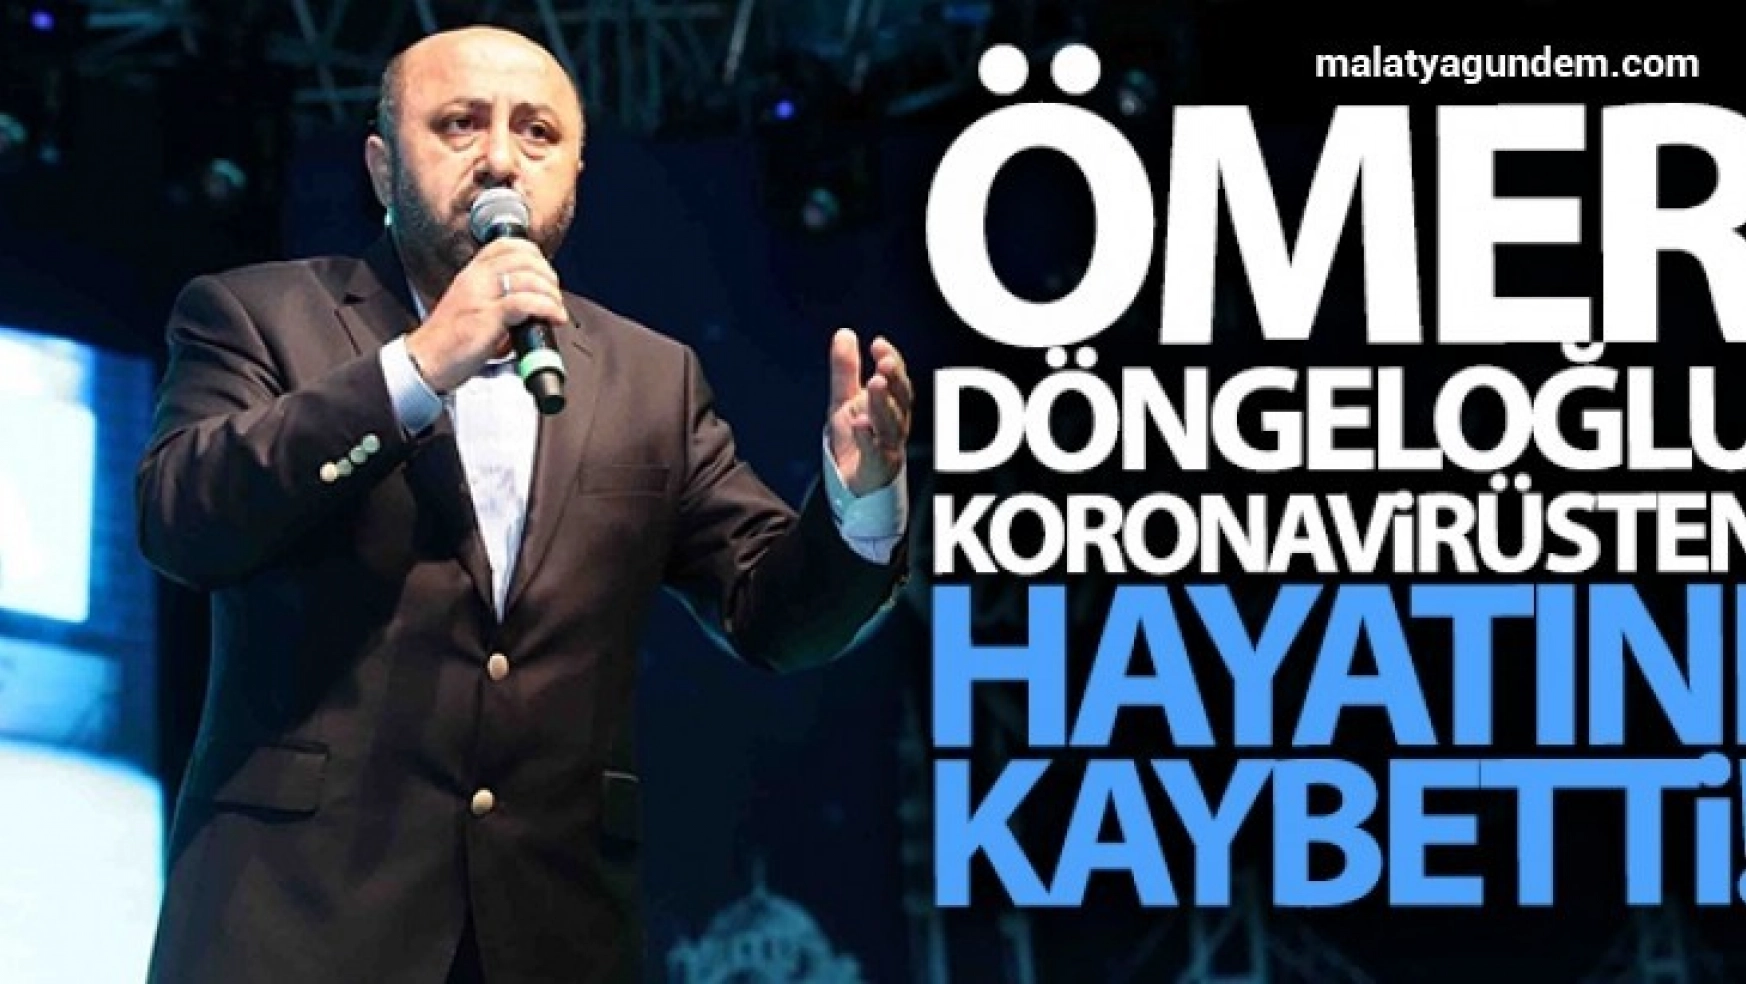 Koronavirüs tedavisi gören Ömer Döngeloğlu hayatını kaybetti